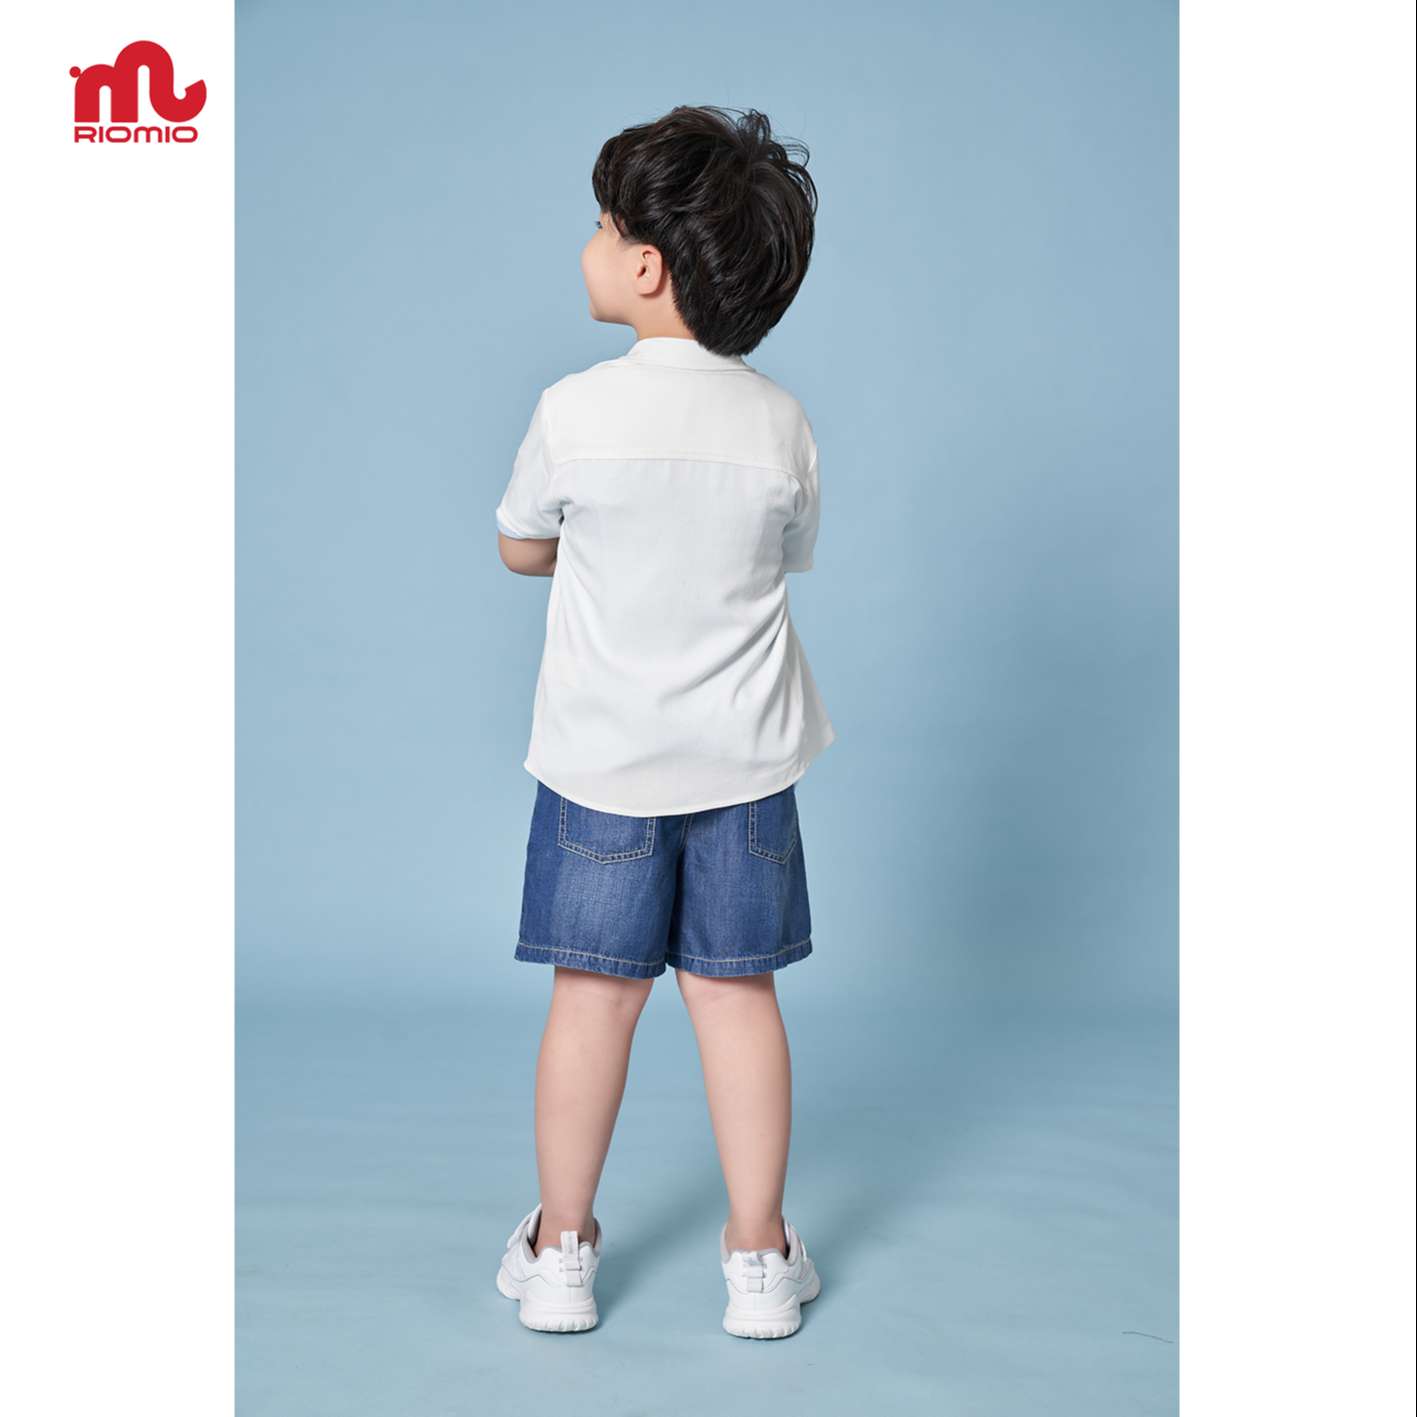 Quần short jean bé trai 3-11 tuổi (15-40kg) RIOMIO sooc bò ống rộng cạp chun 100% cotton sợi tencel - RM217